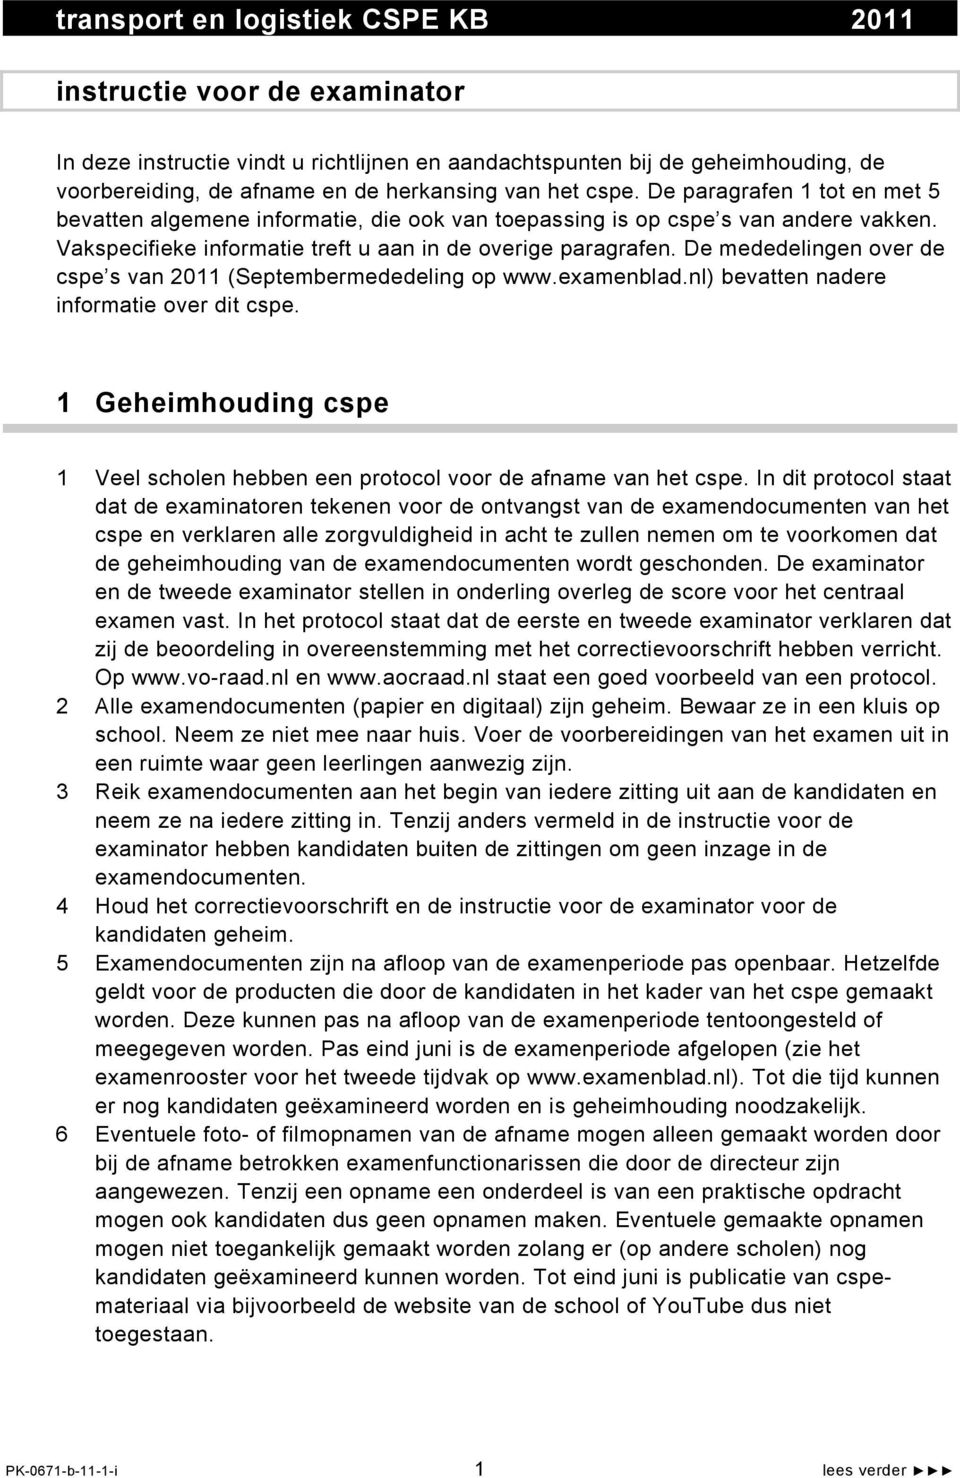 De mededelingen over de cspe s van 2011 (Septembermededeling op www.examenblad.nl) bevatten nadere informatie over dit cspe.